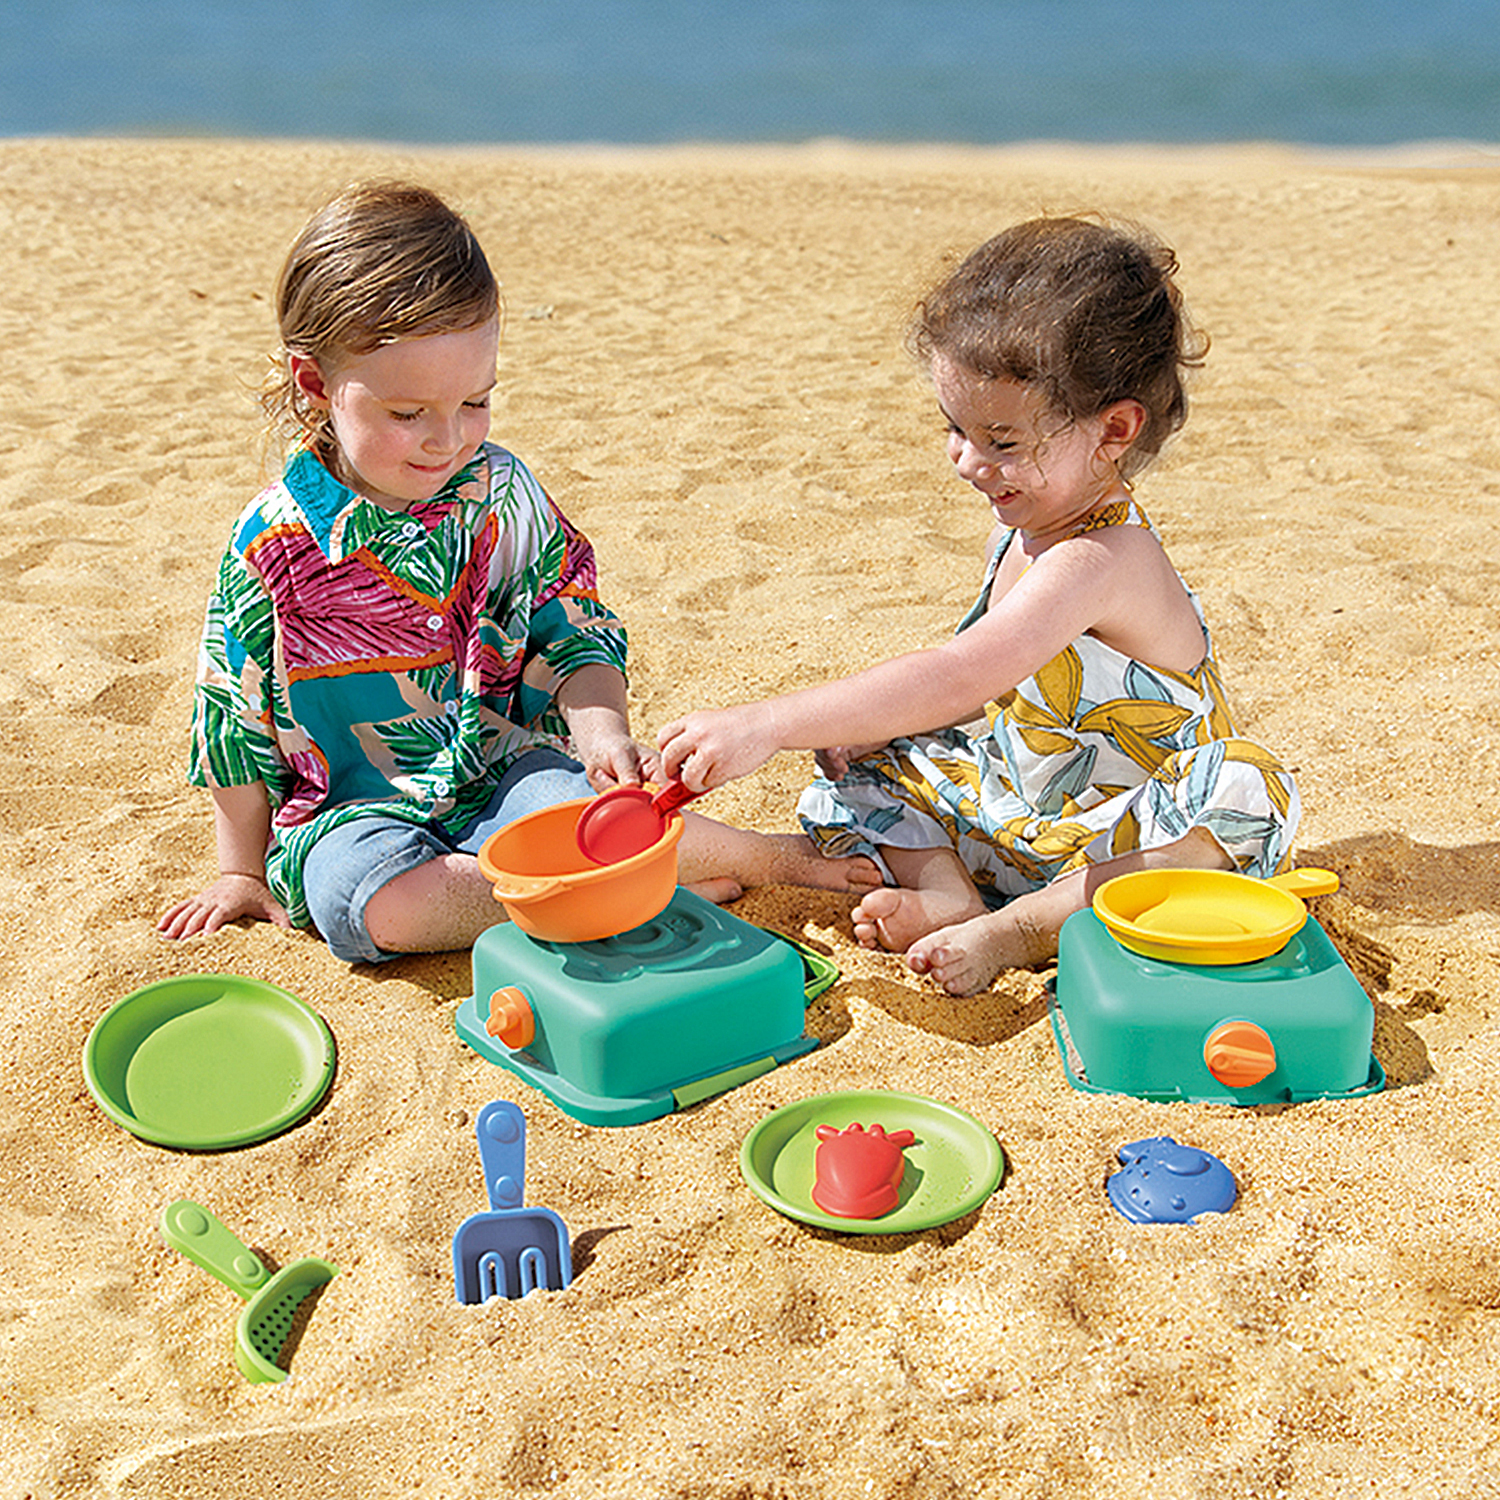 Игровой Пляжный набор Шеф-повар на пляже Hape E4106_HP набор для игр на открытом воздухе hape 847121 hp